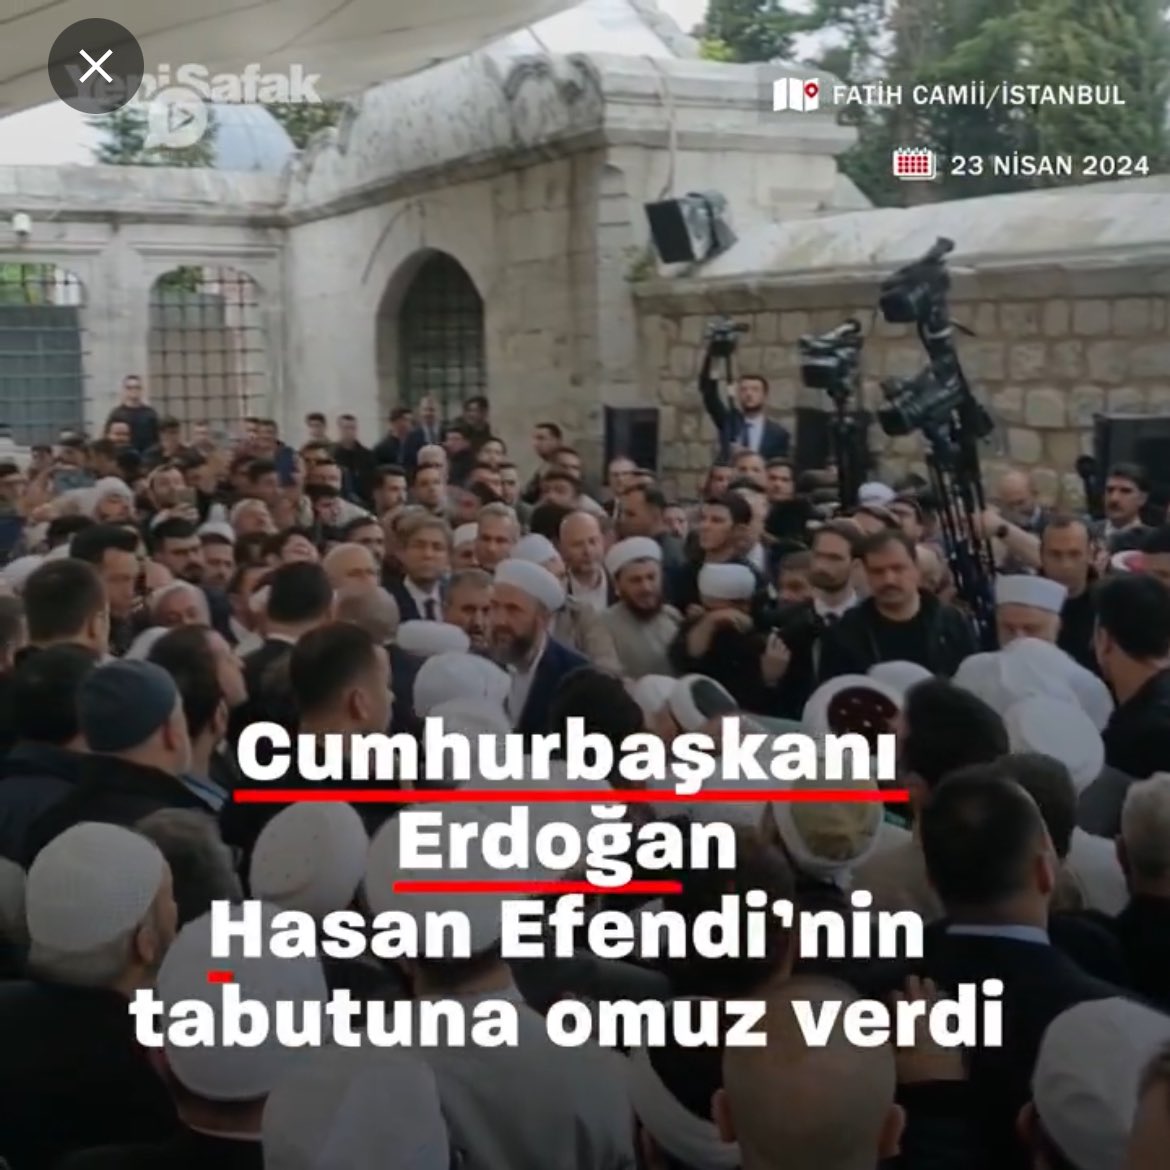 İsmailağa Hasan Efendi’nin cenazesine siyasi parti liderlerinden sadece Cumhurbaşkanı Erdoğan ve M.Destici katıldı. Fatih Erbakan, A.Davutoğlu ve A.Babacan’ın olmaması dikkat çekti. Neden yoklardı acaba!